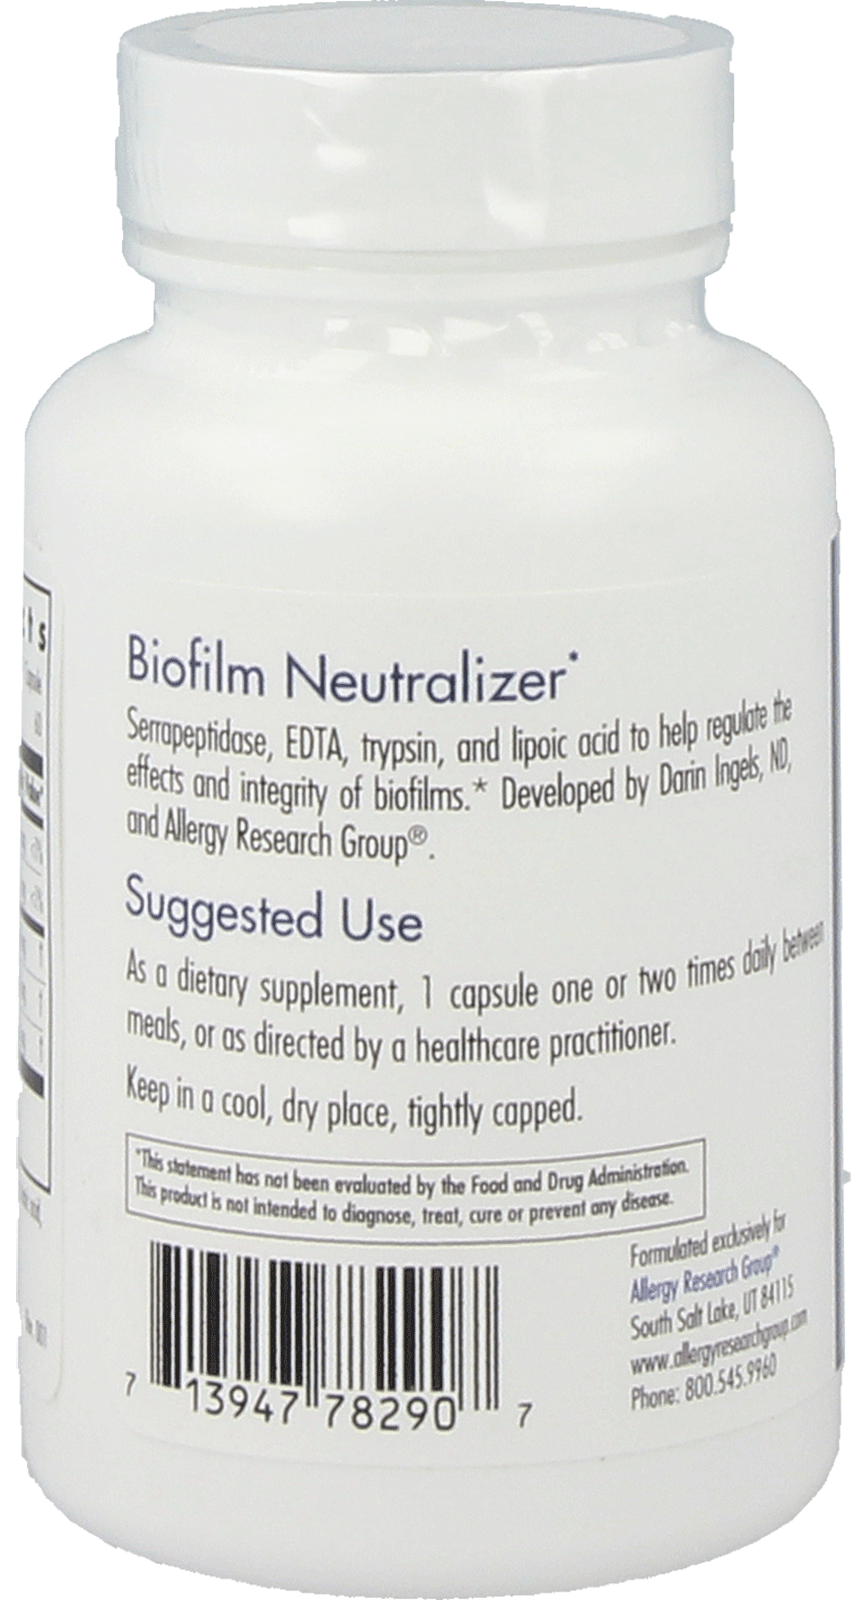 Biofilm Neutralizer*